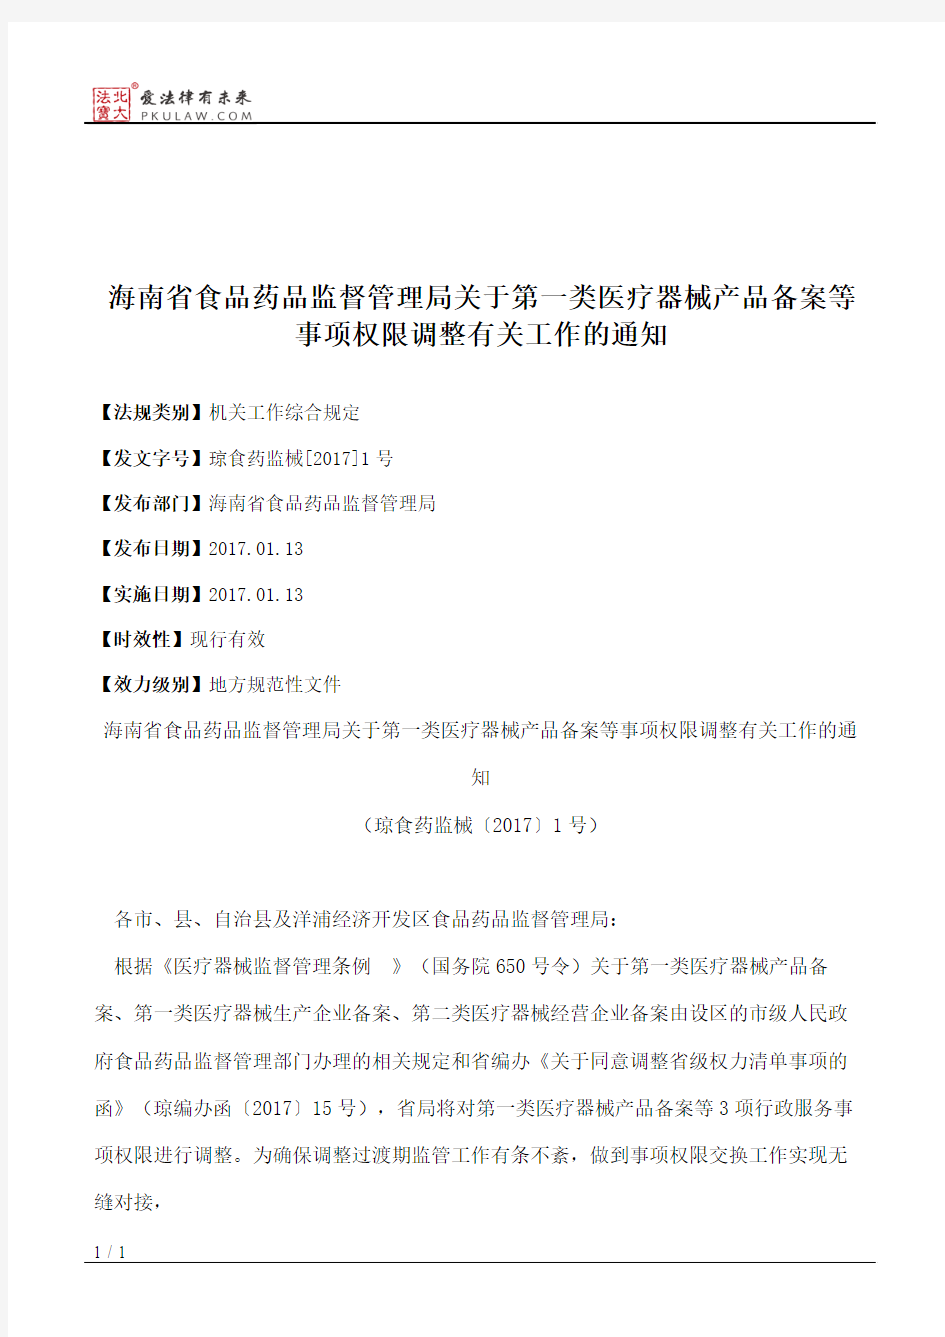 海南省食品药品监督管理局关于第一类医疗器械产品备案等事项权限